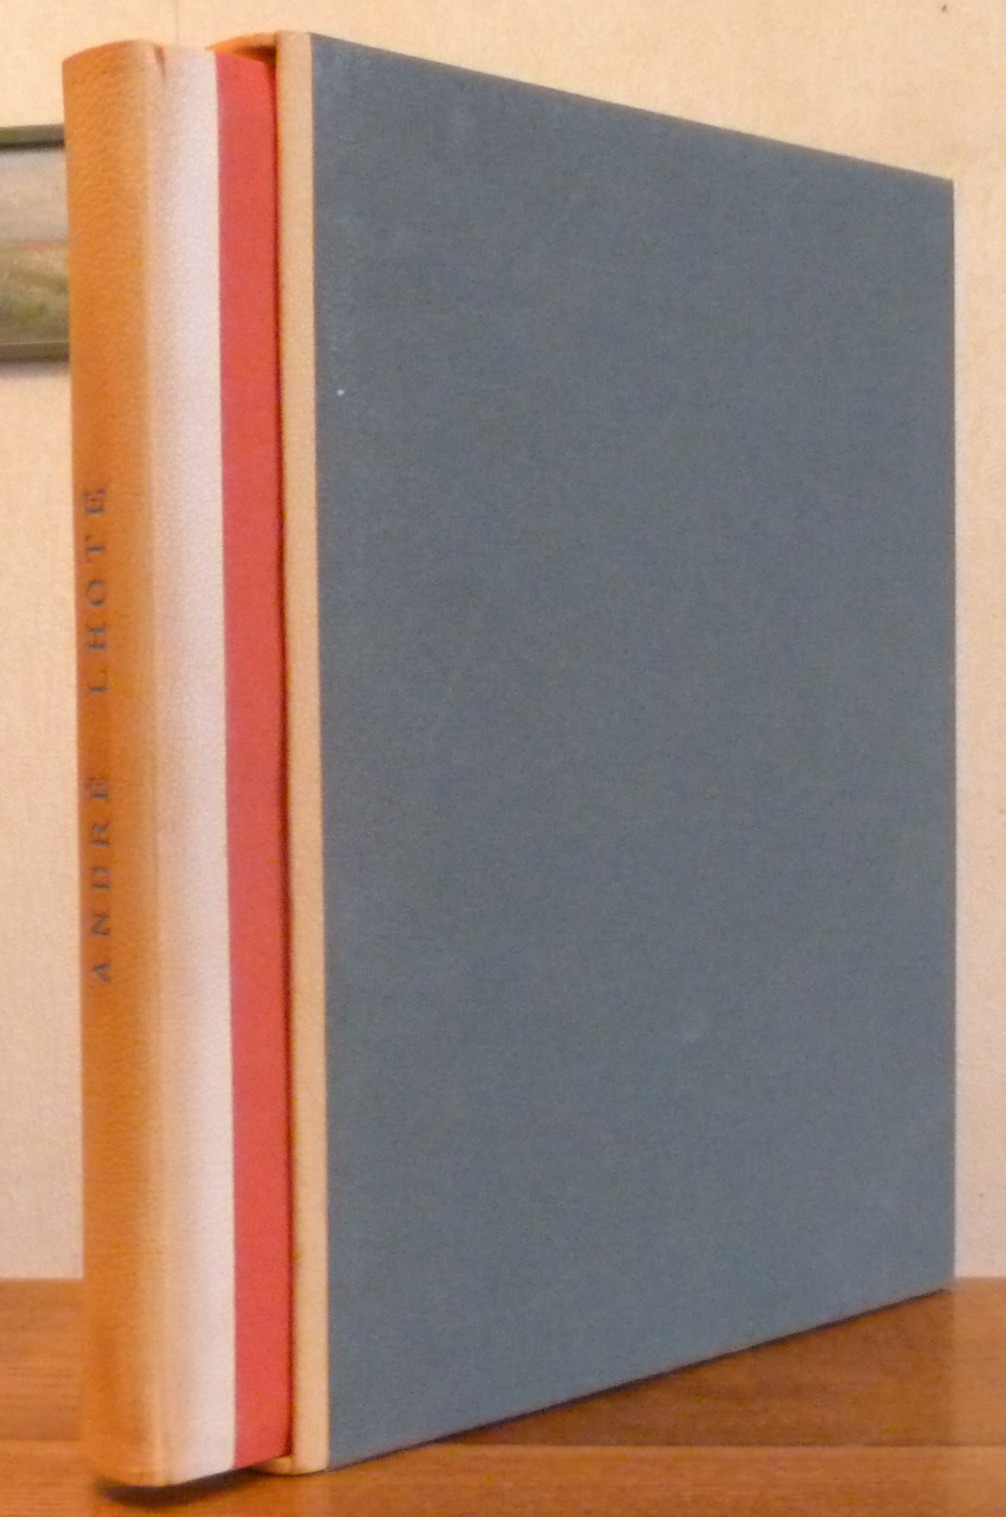 Demi-cuir à encadrements, reproduction en papiers marbré uni de deux tableaux de Lhote, en imitant la une de couverture